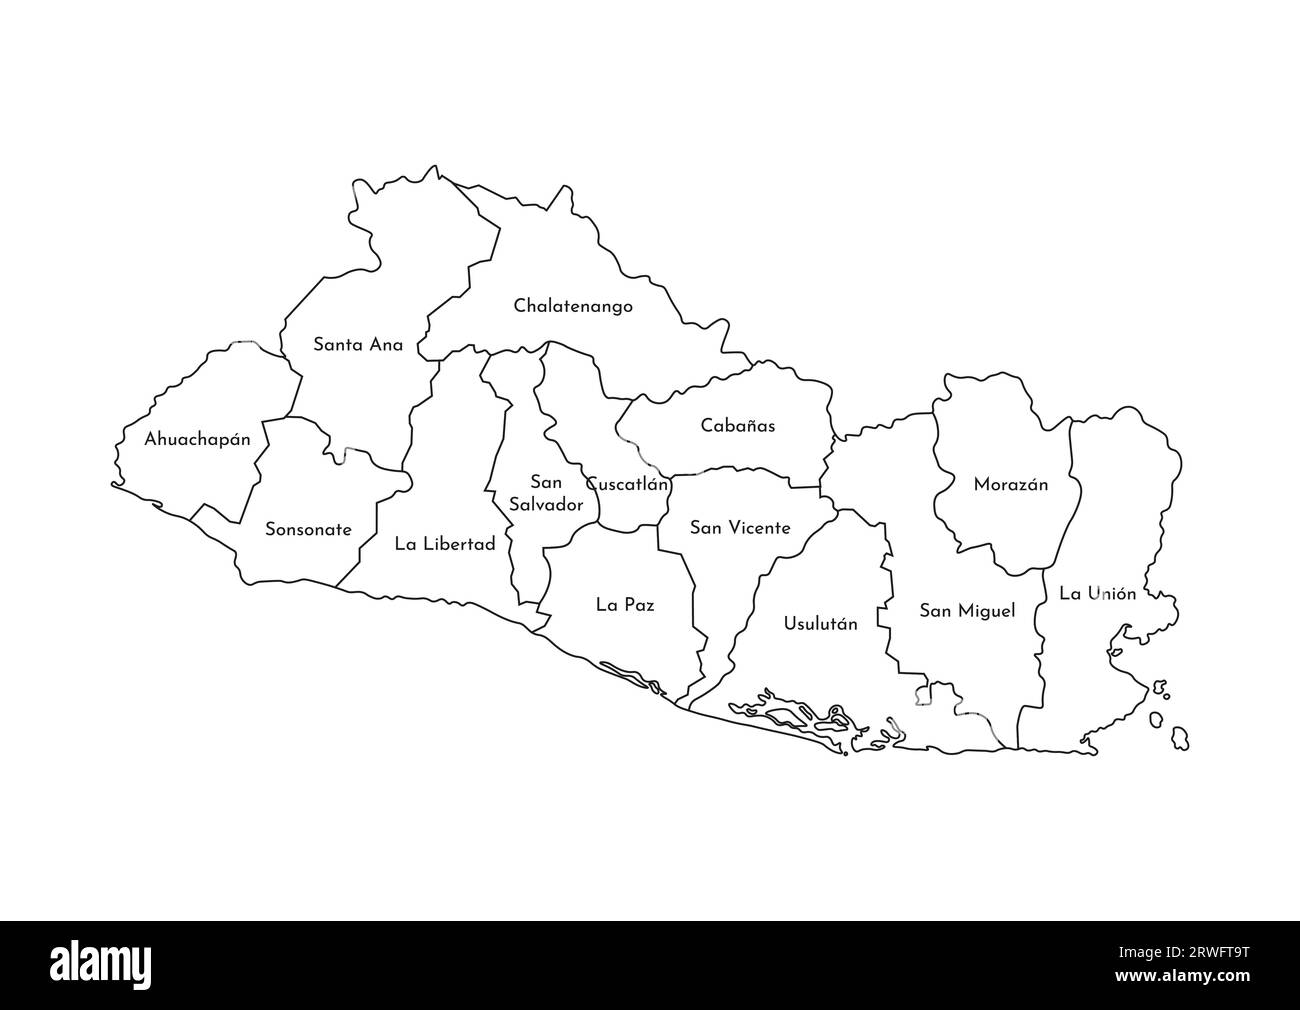 Illustrazione vettoriale isolata della mappa amministrativa semplificata di El Salvador. Confini e nomi dei dipartimenti (regioni). Silhouette nere. Illustrazione Vettoriale